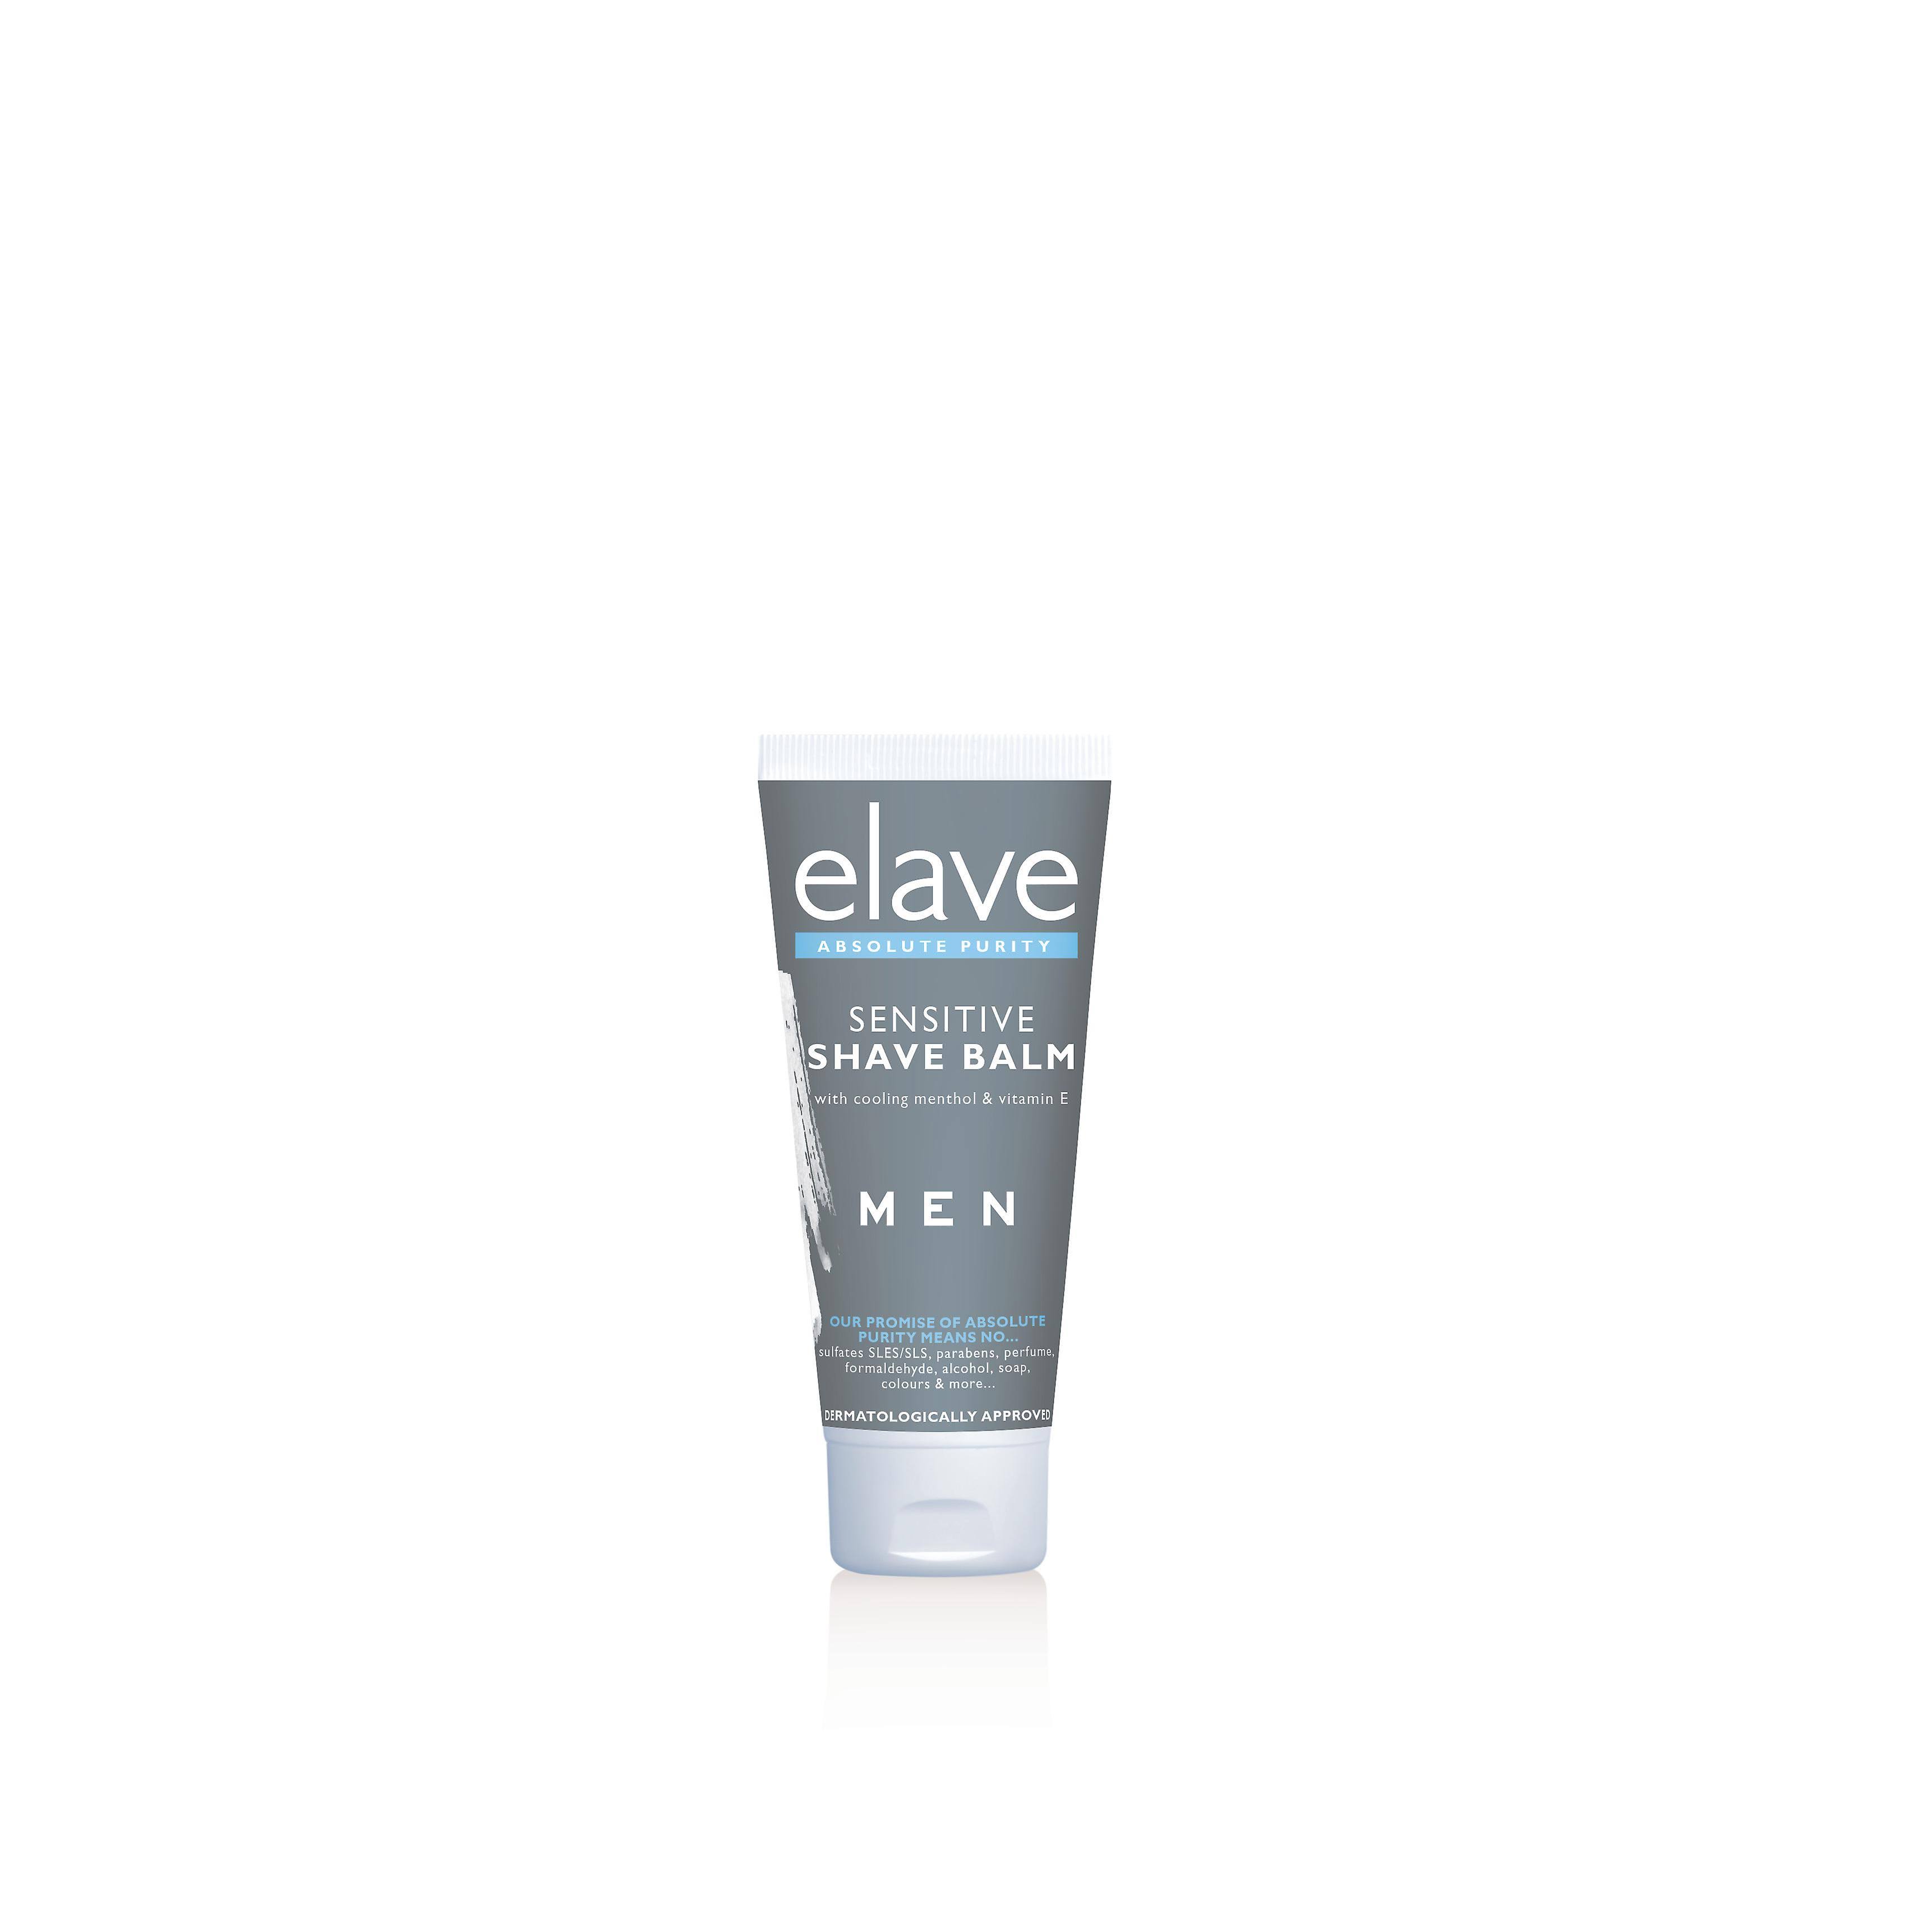 Elave Sensitive Men's Shave Balm